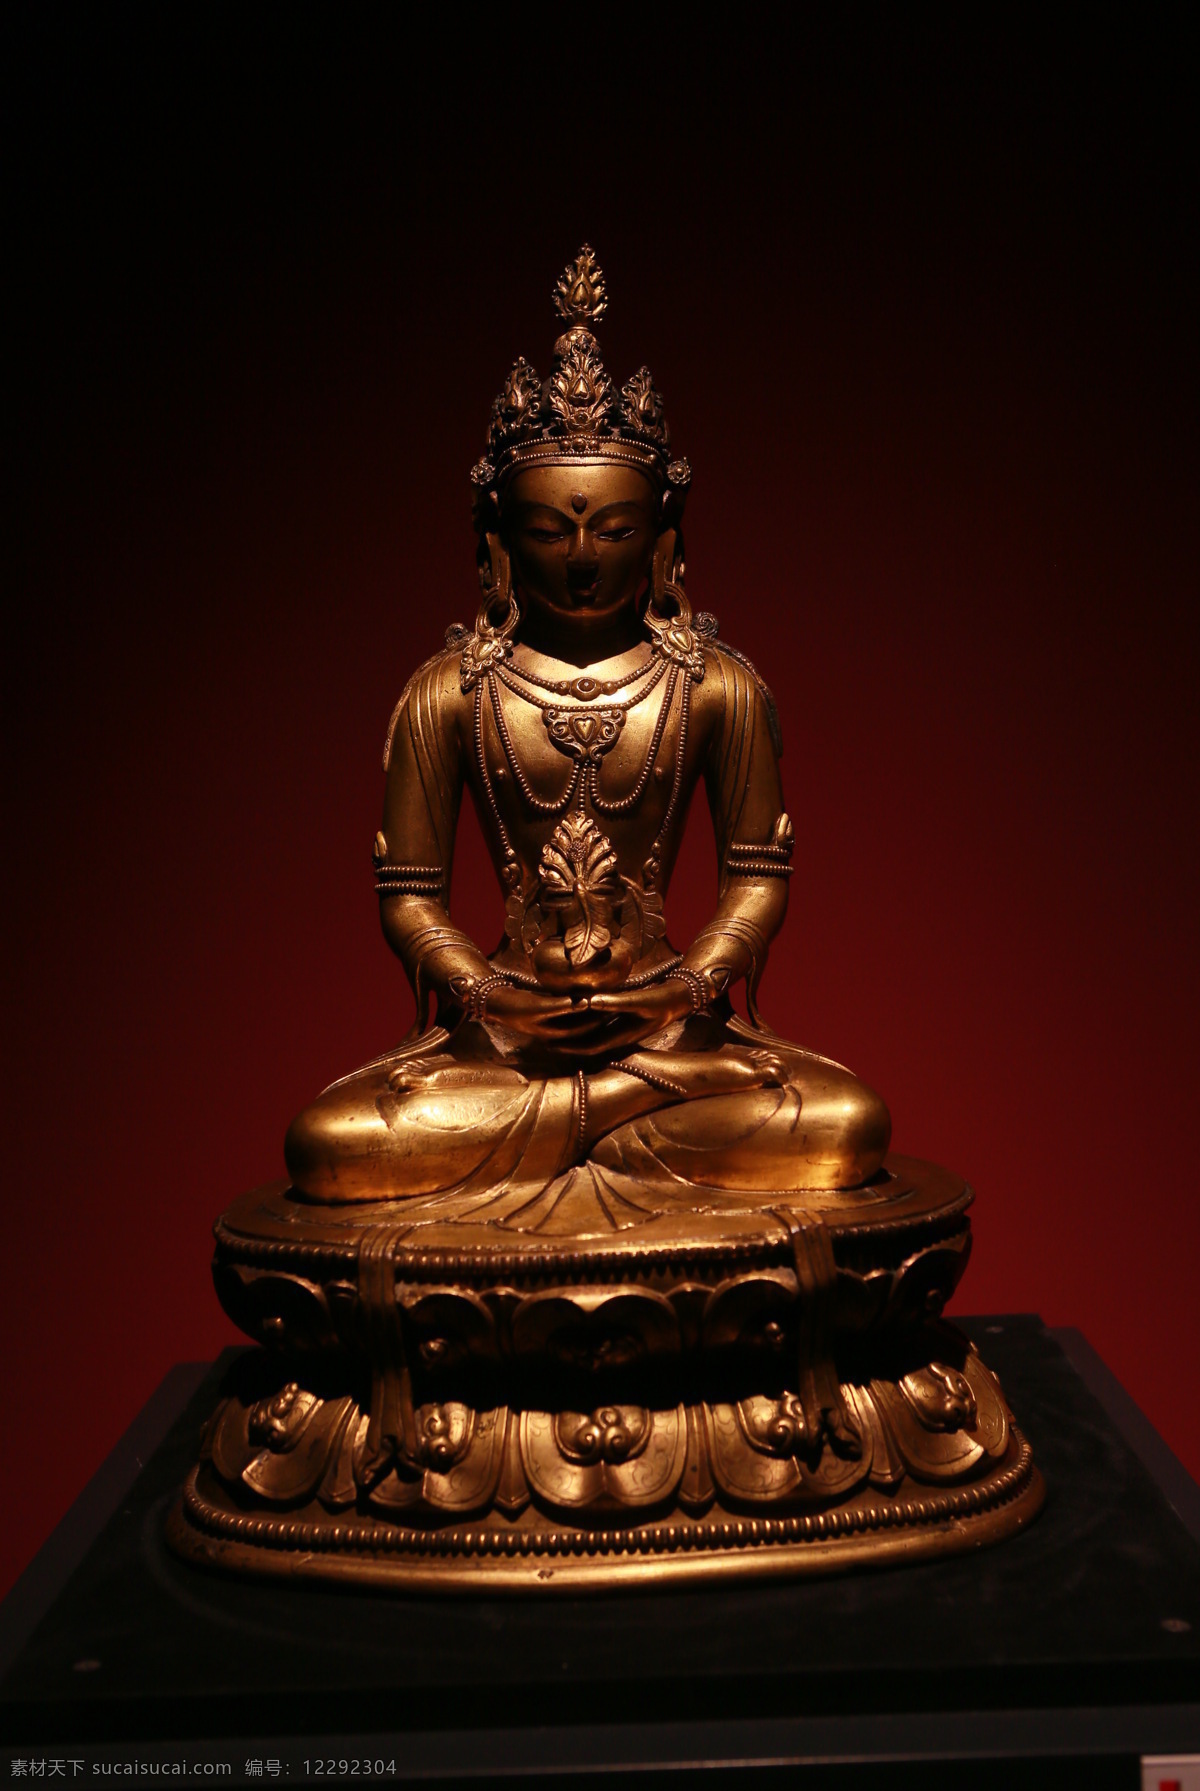 藏传佛像 藏传 佛像 铜佛 佛教 佛家 文化艺术 宗教信仰